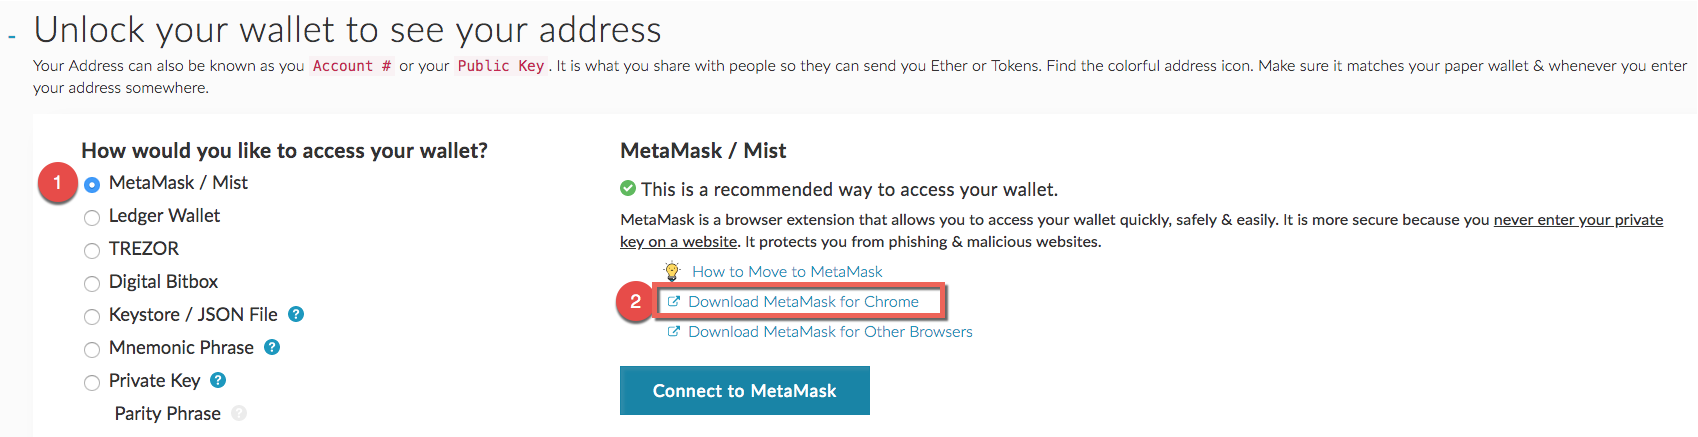 Klicke den Punkten folgend, um das MetaMask-Plugin für Chrome zu installieren!